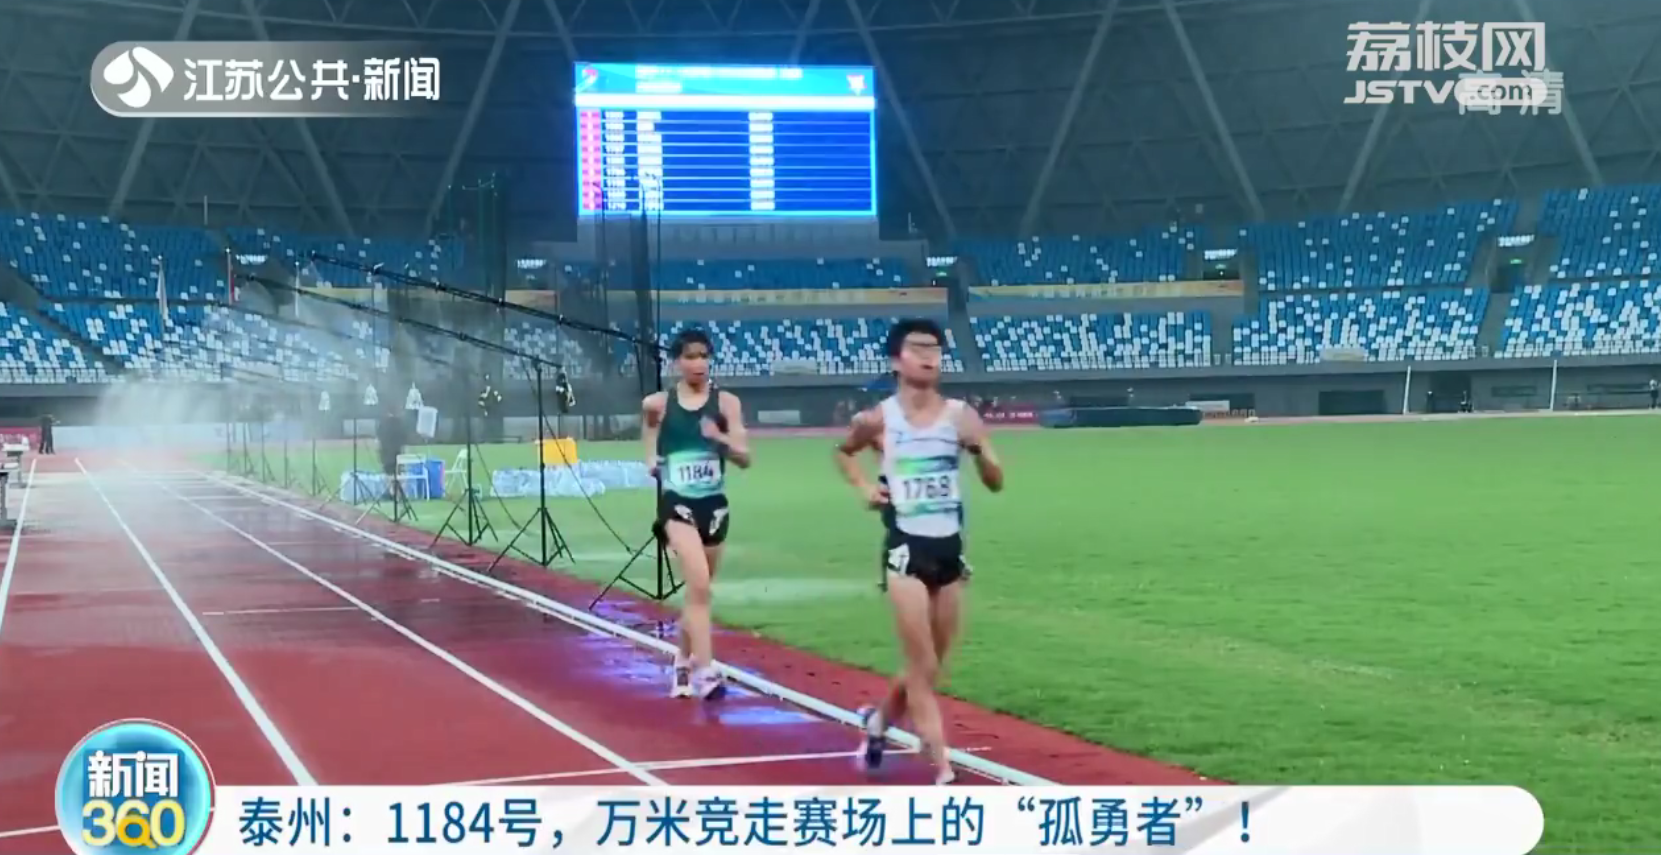 江苏省运会上运动员最后一个抵终点 却赢得热烈掌声